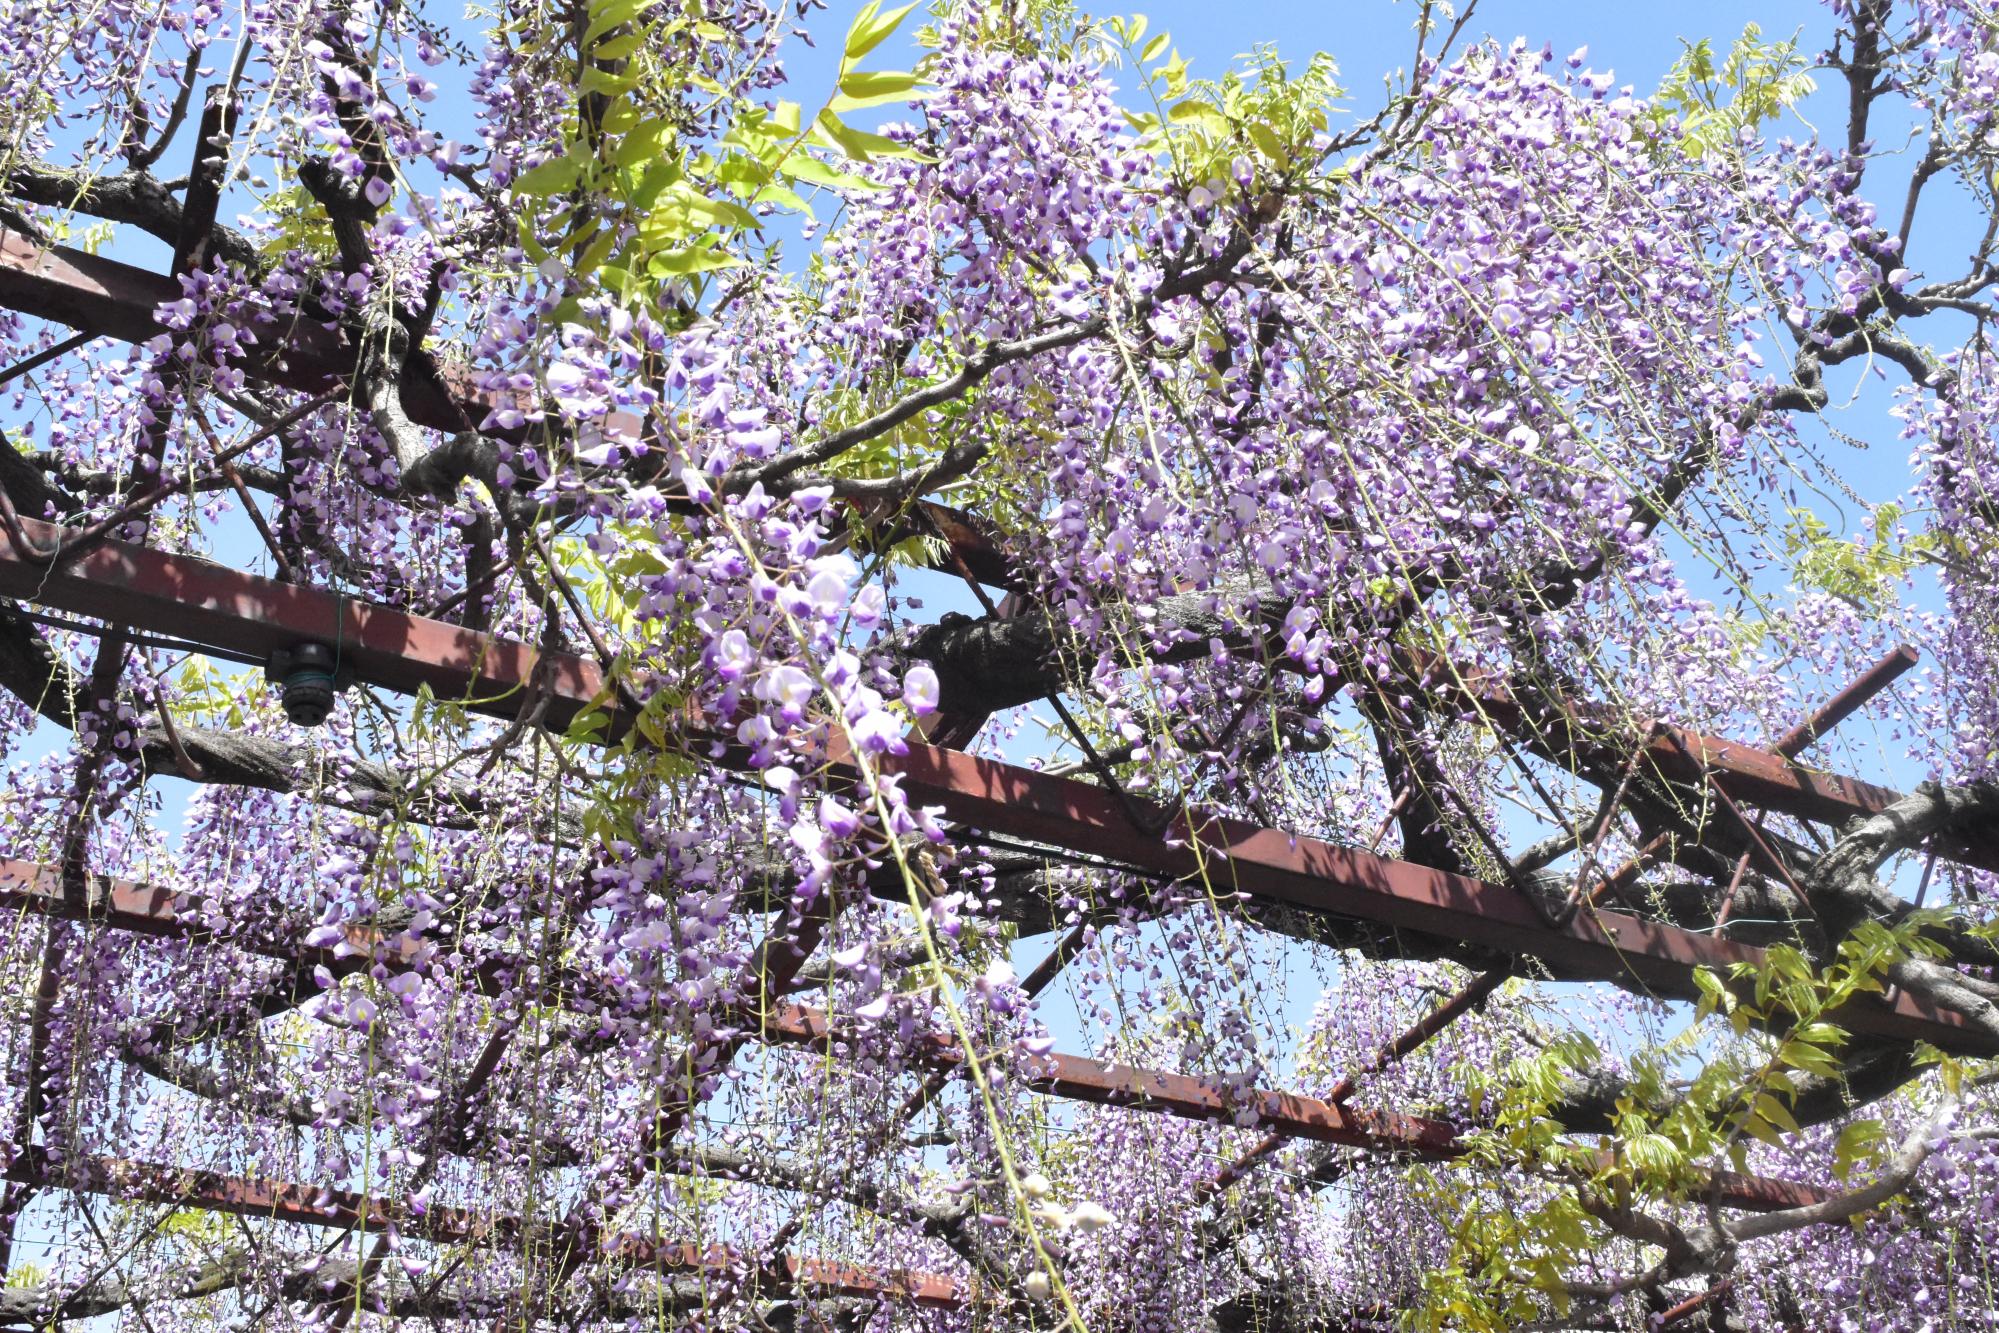 2023年4月13日(木)時点の徳王神社の藤の開花状況を更新しました。